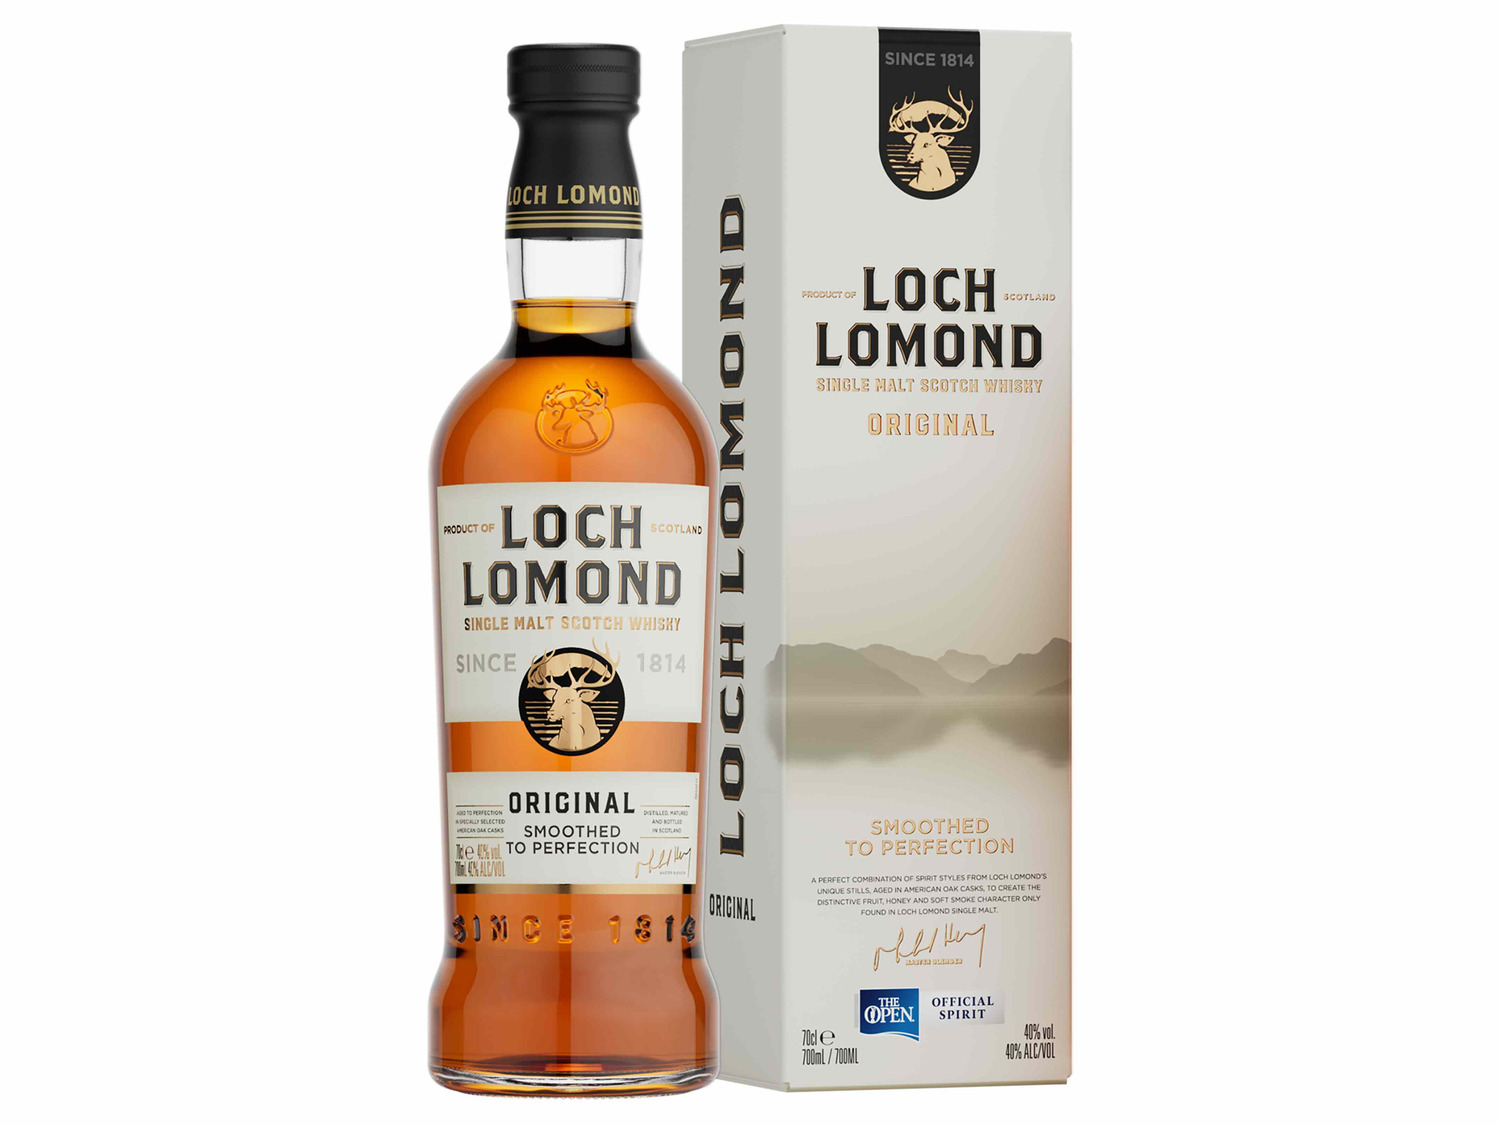 Loch Lomond Original Single Scotch Ges… Whisky mit Malt